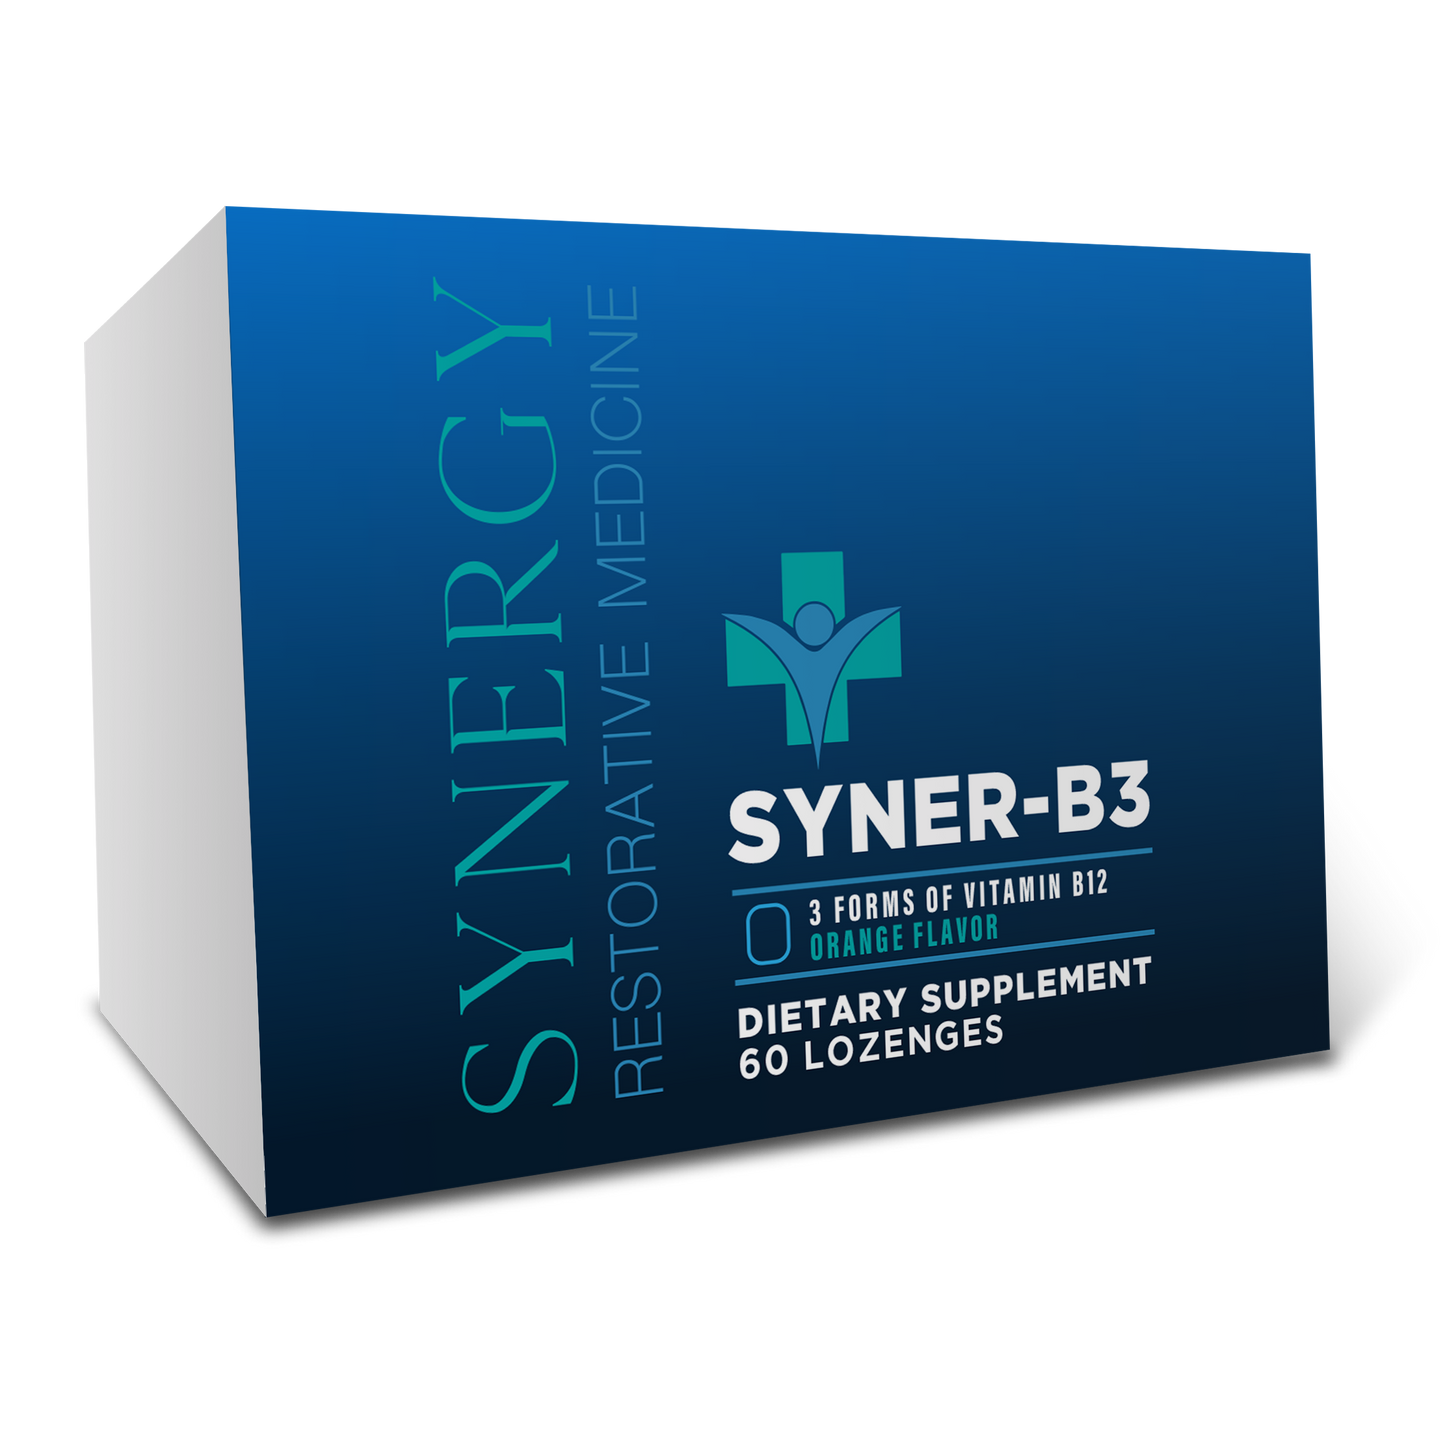 Syner-B3